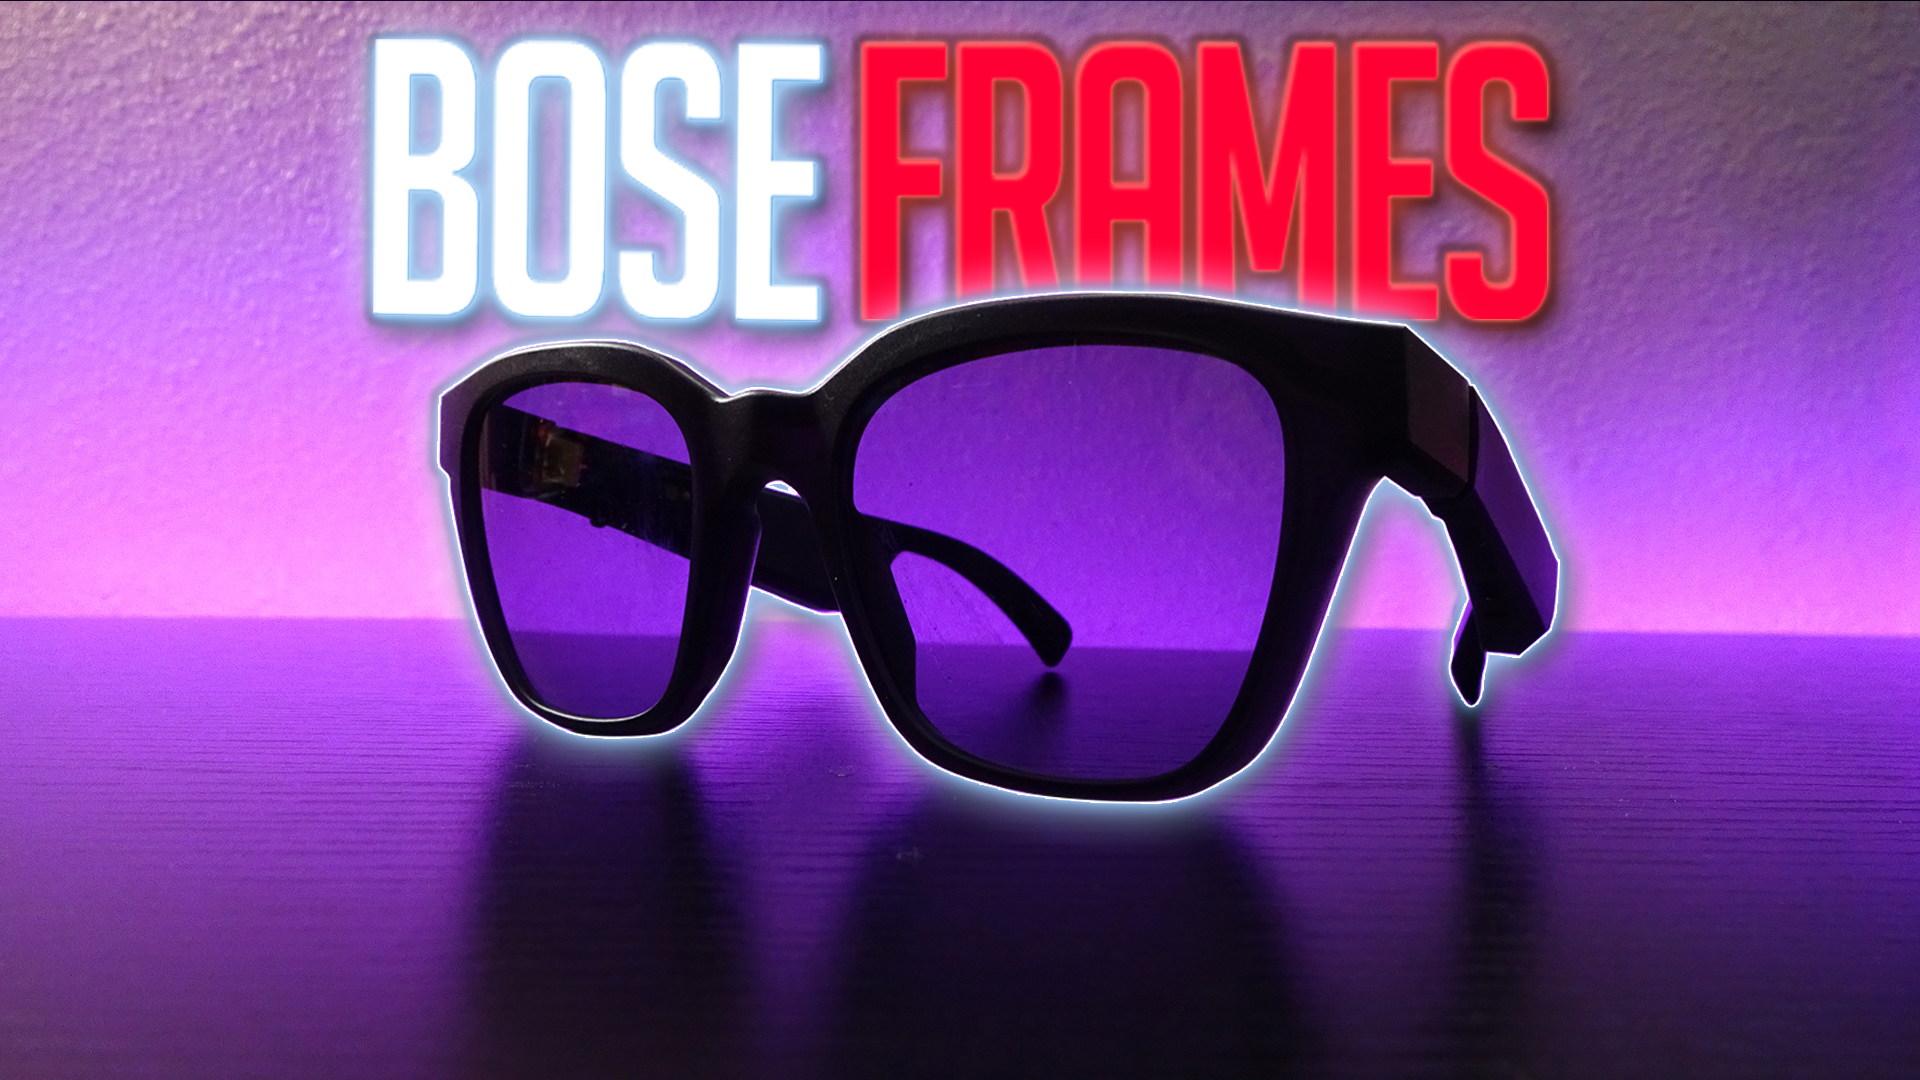 Meet Bose Frames